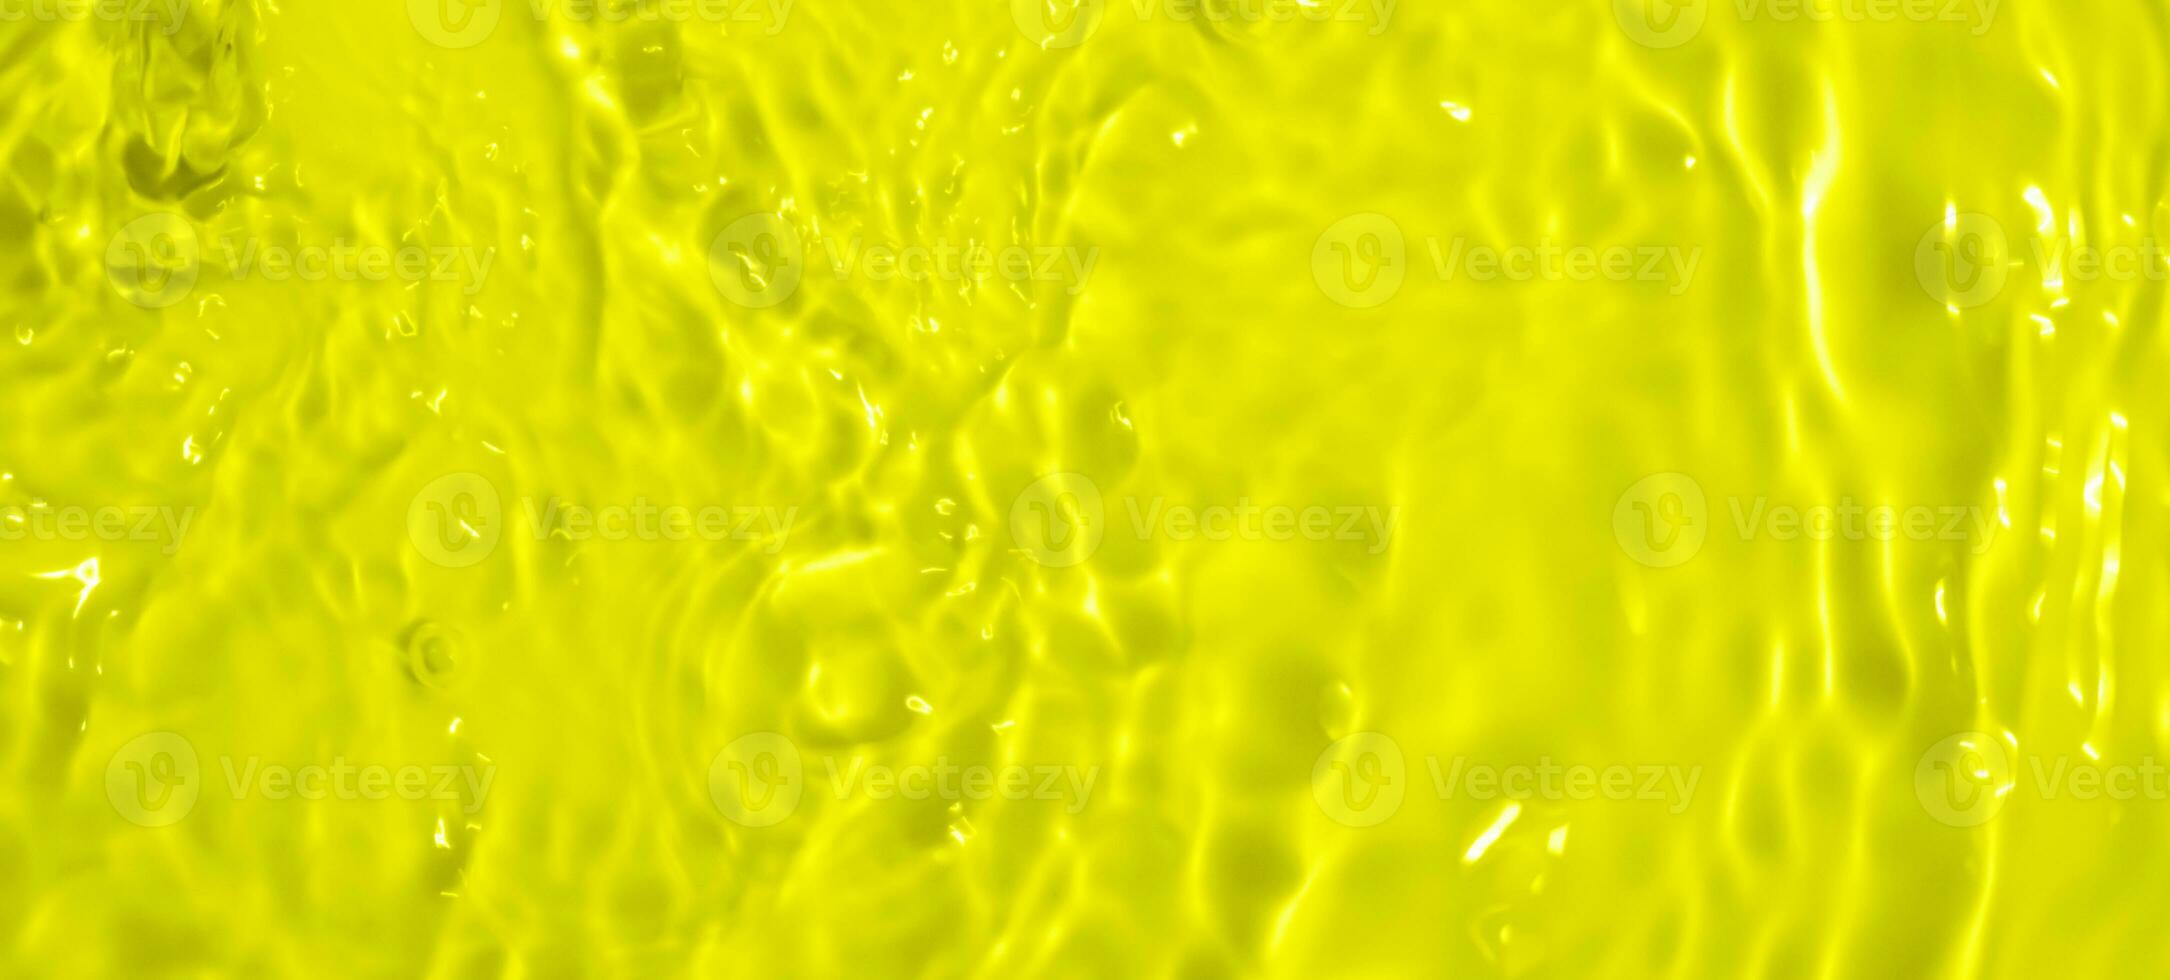 abstrakt transparent vatten skugga yta textur naturlig krusning på gul bakgrund foto